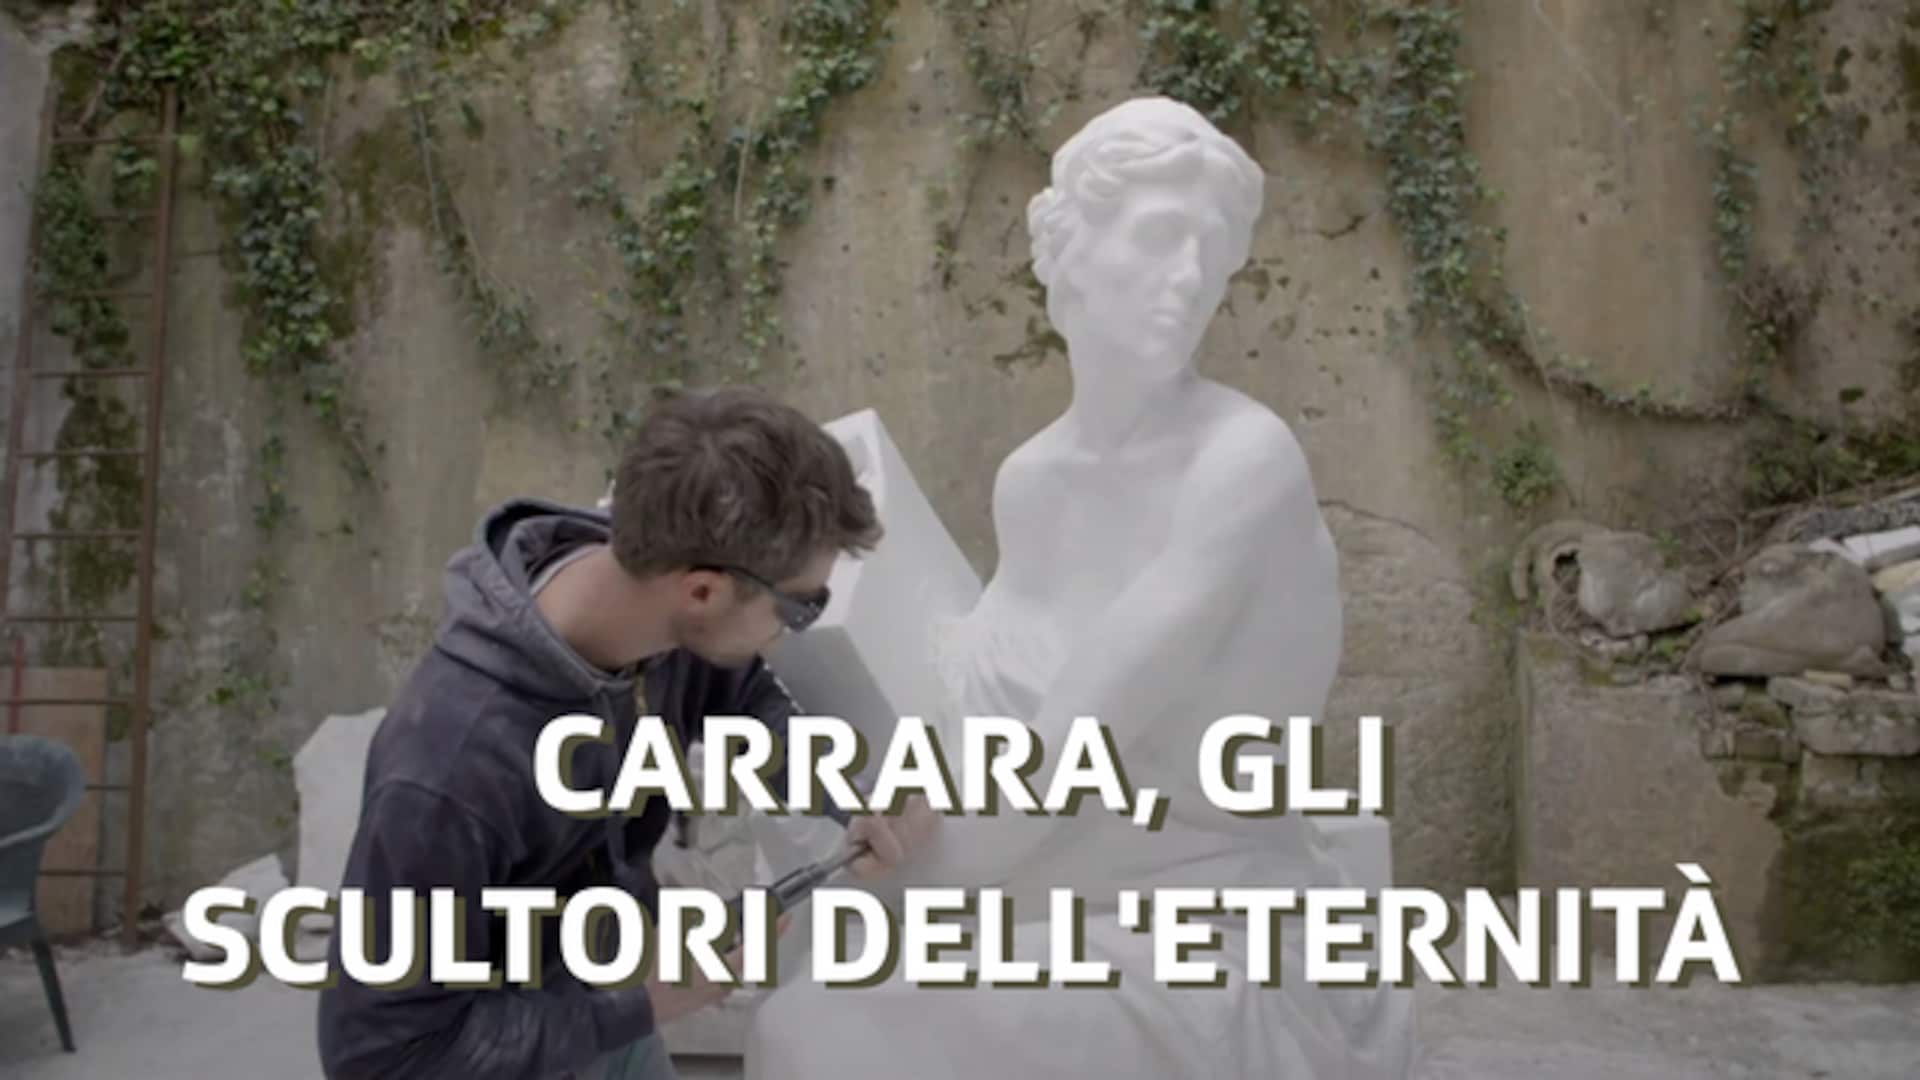 Carrara, gli scultori dell'eternità